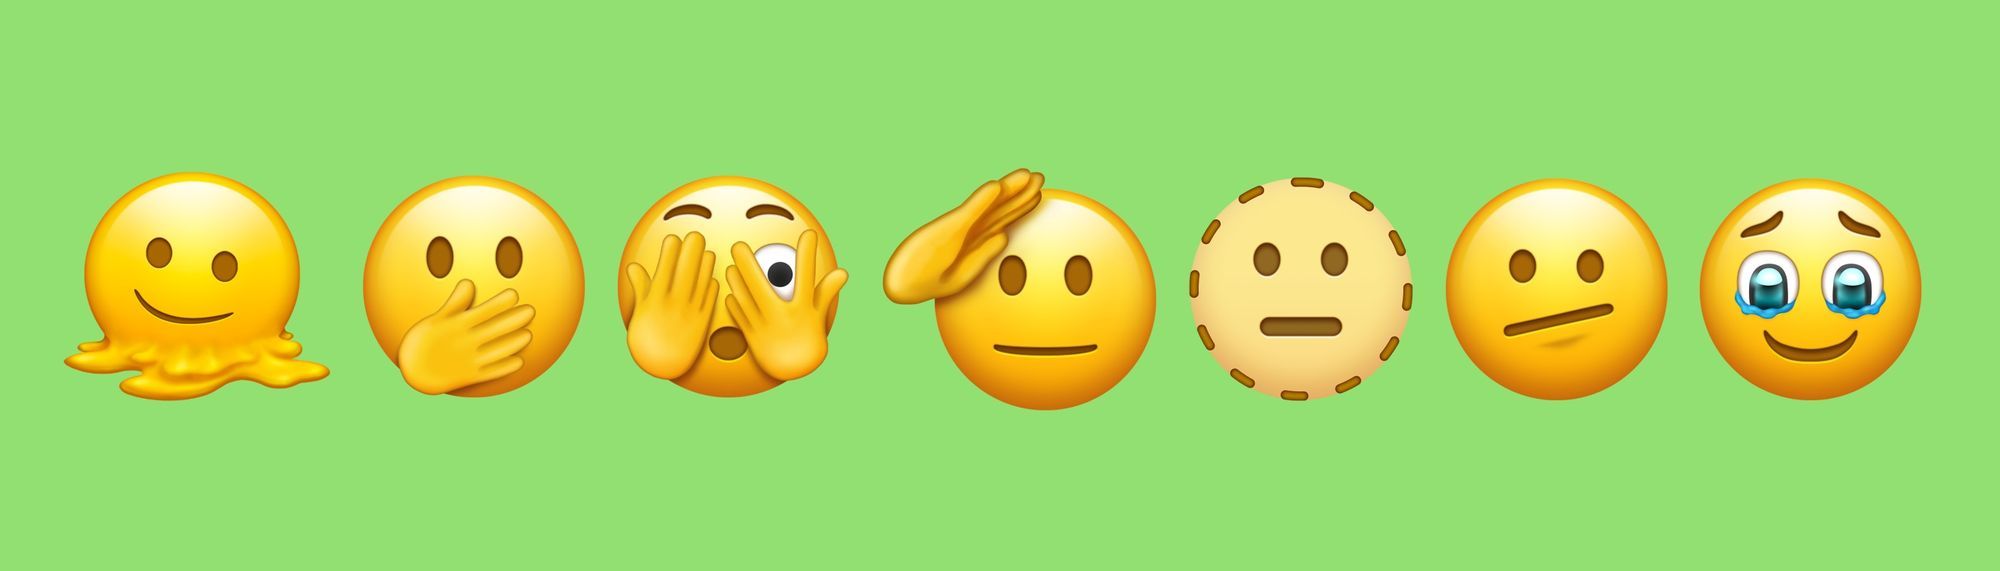 emoji baru di whatsapp 2021